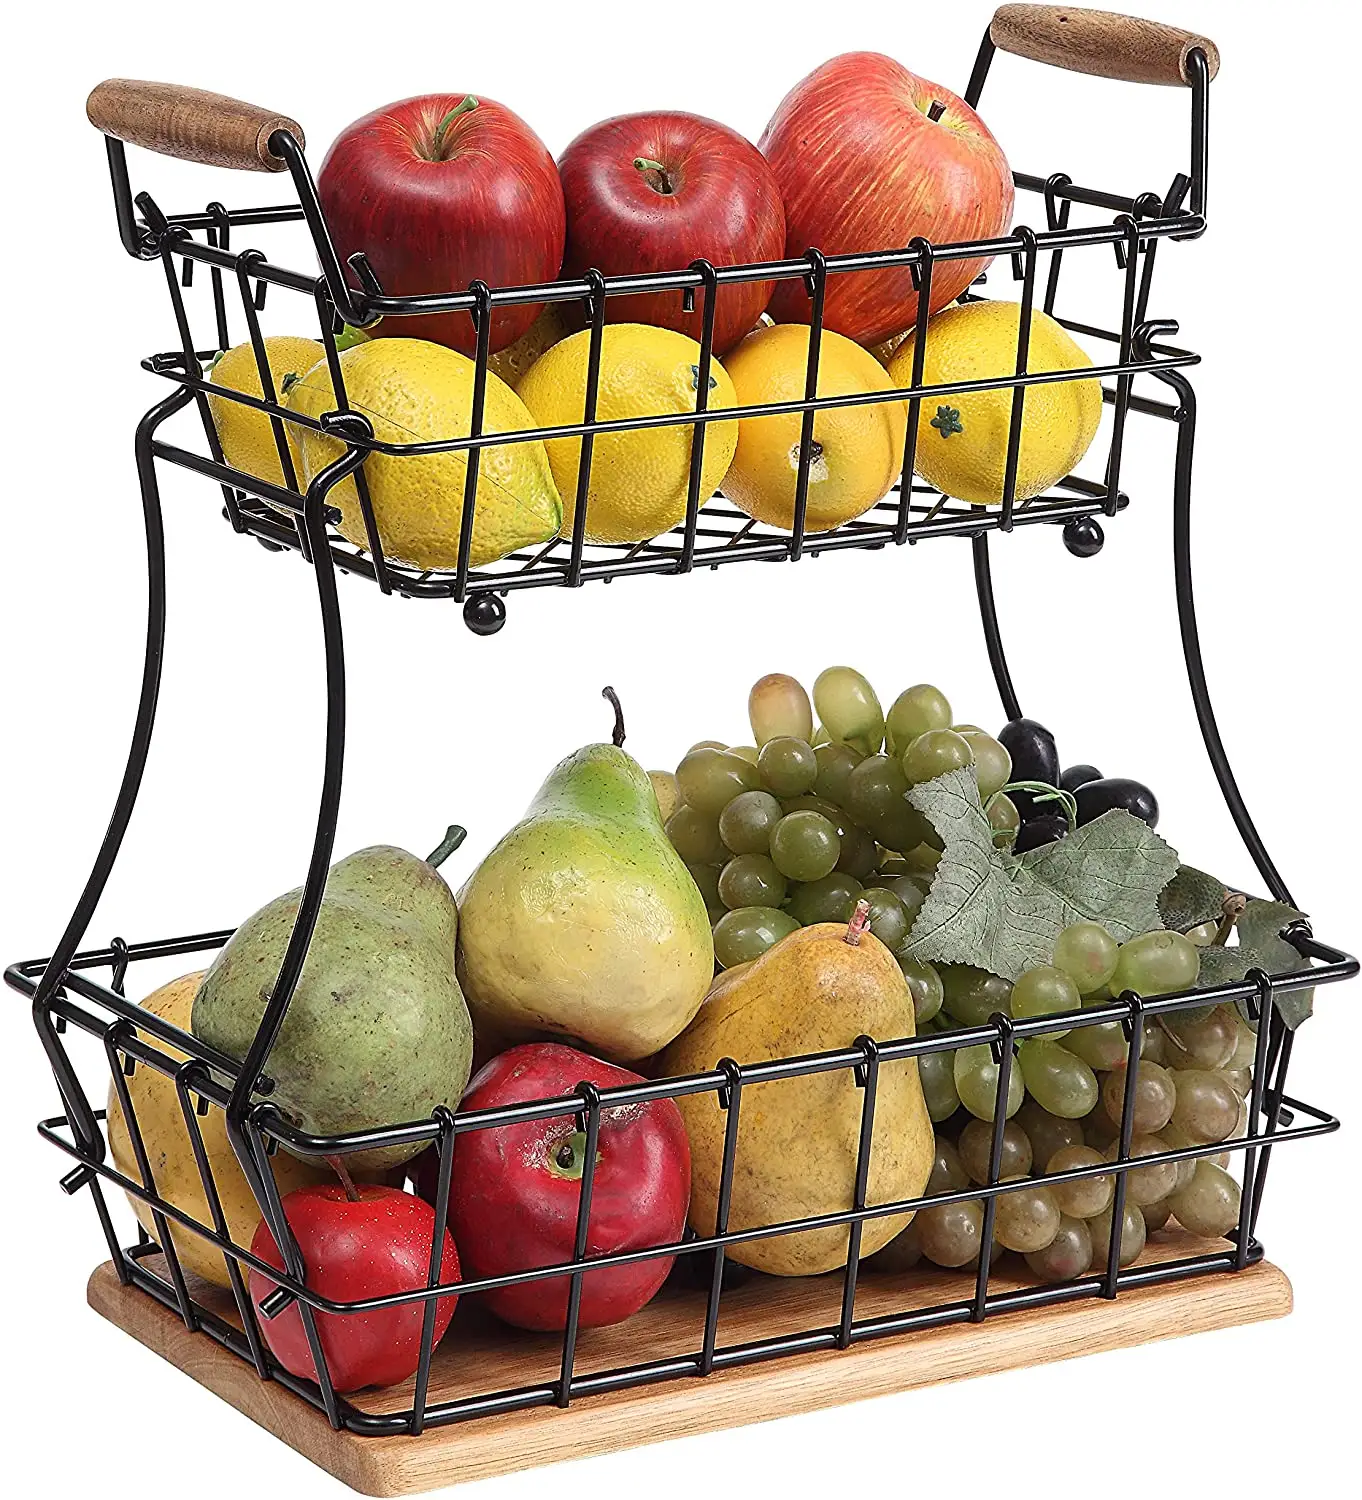 2 Tier Retângulo Cesta De Pão De Frutas Com Alças Durável Cozinha Bancada Cesta De Frutas Fio De Metal Cesta De Pão Empilhado